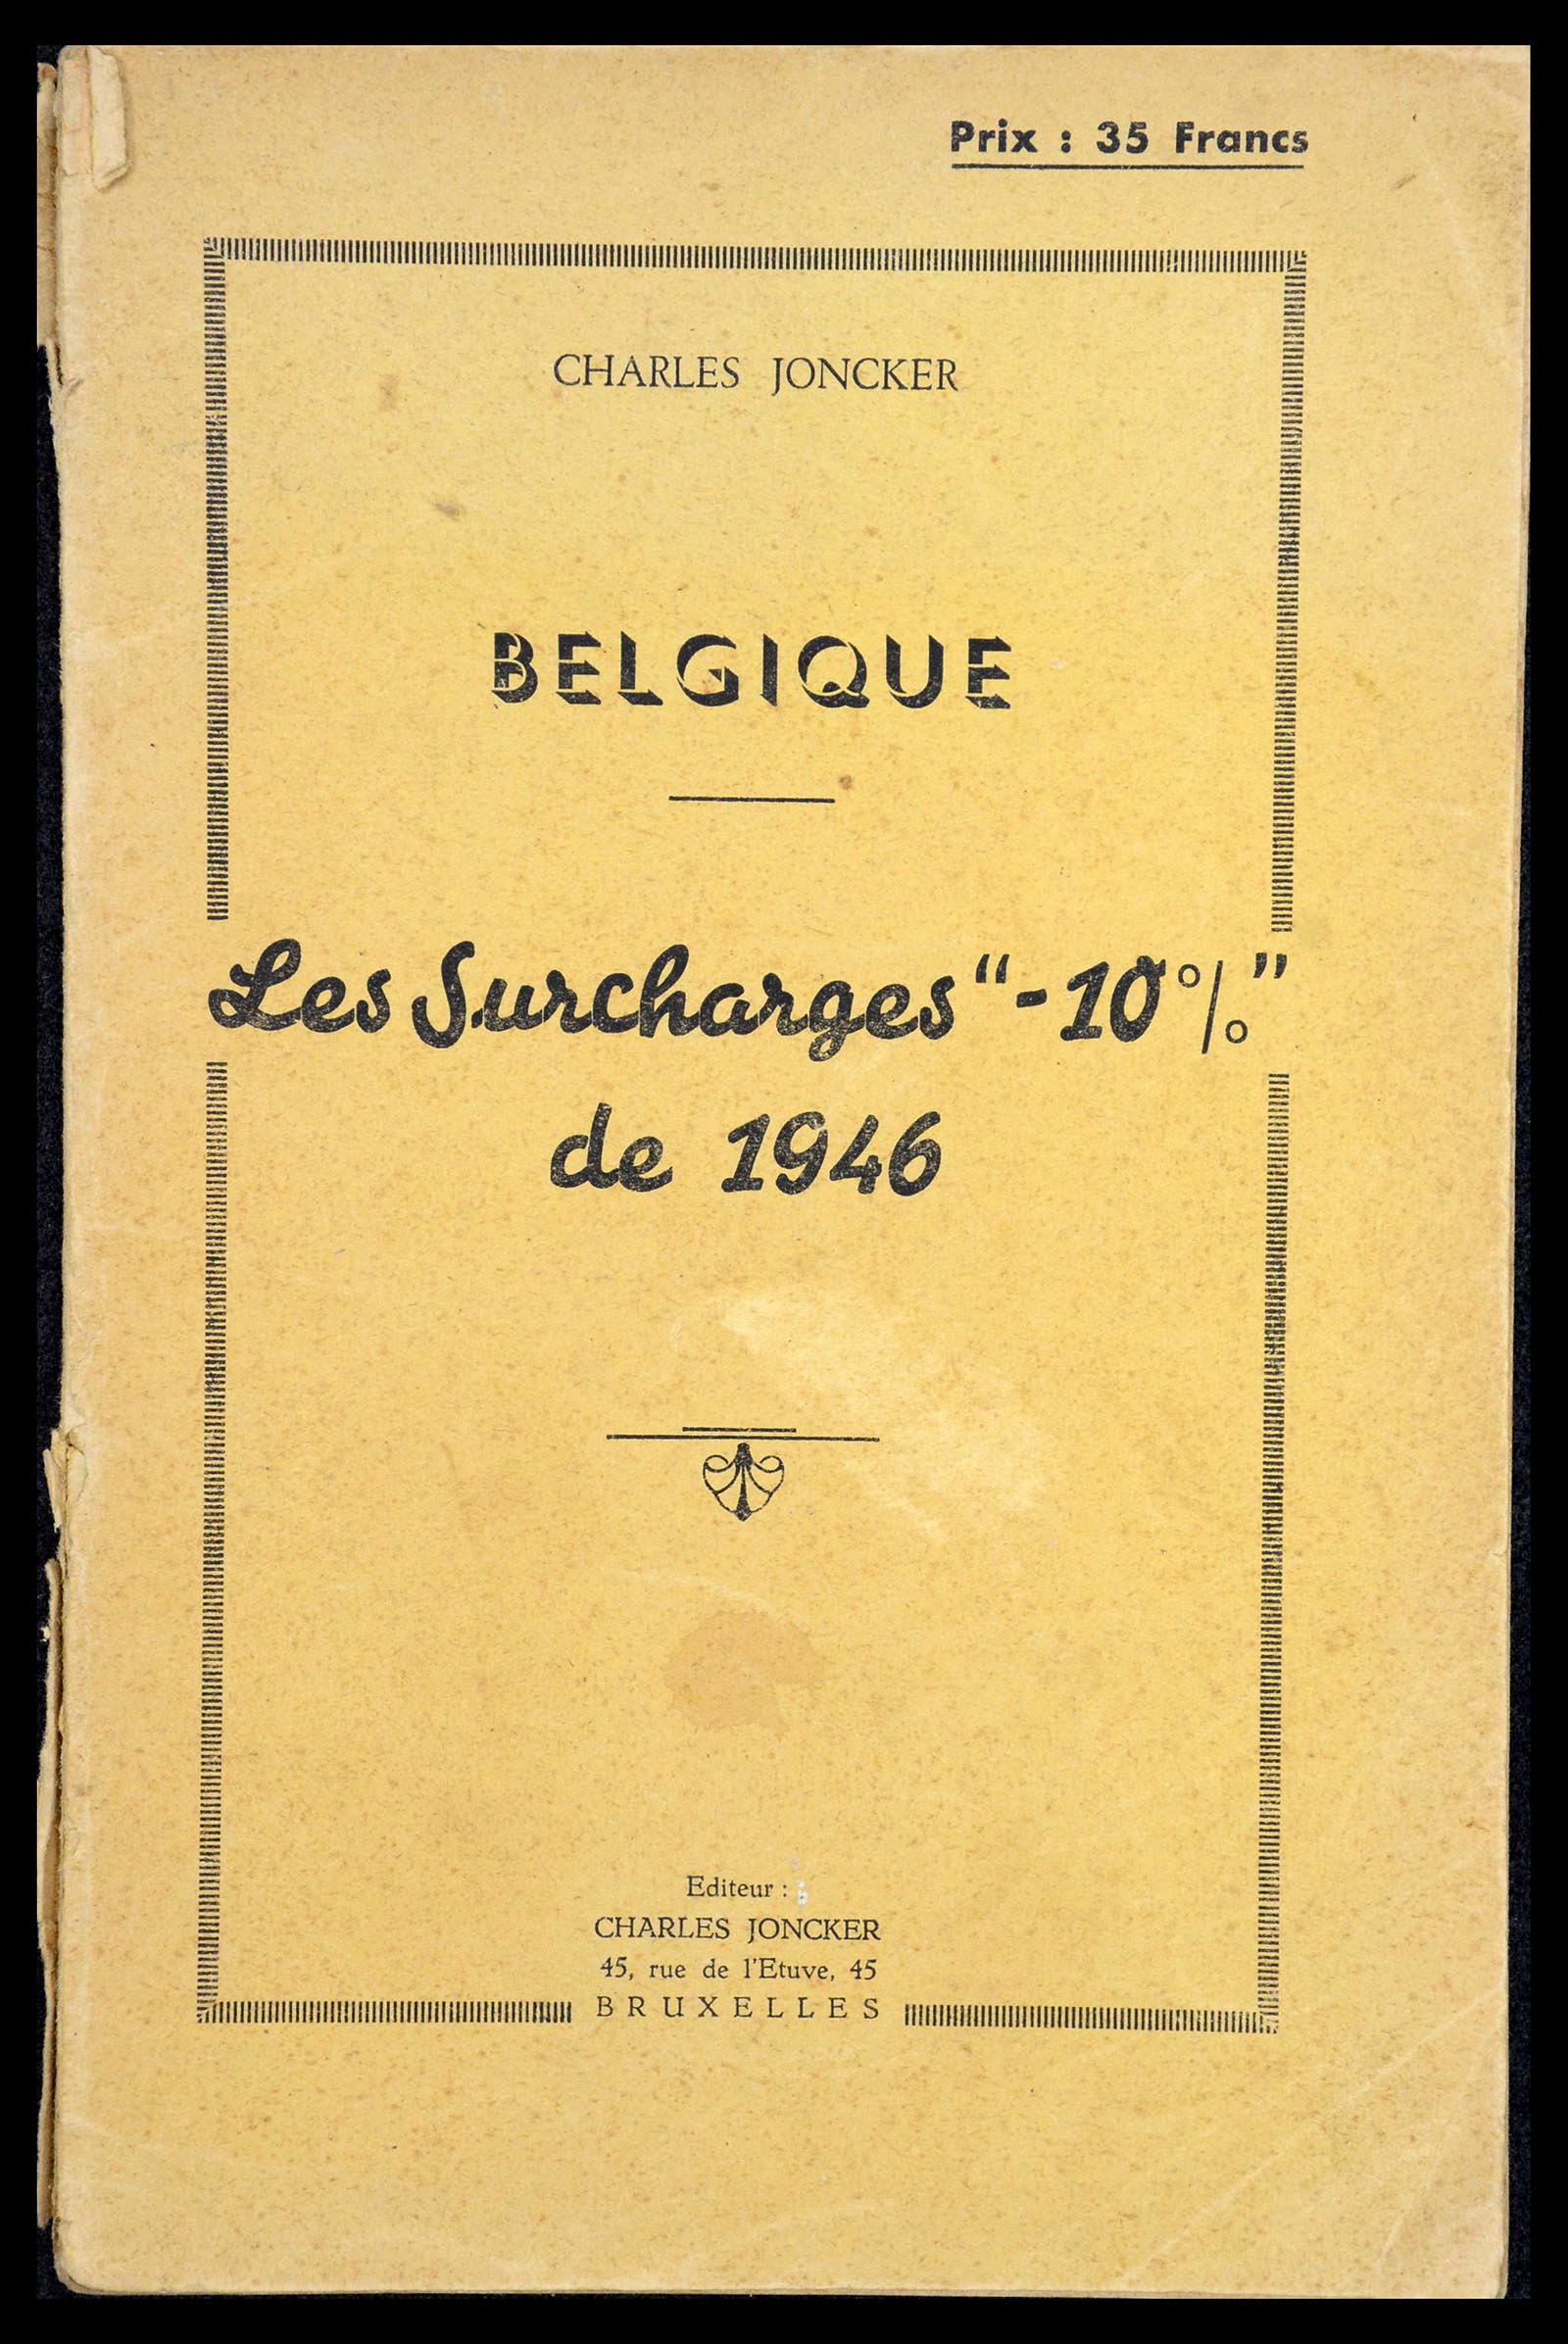 35733 196 - Stamp Collection 35733 Belgium 1946 -10% overprints.